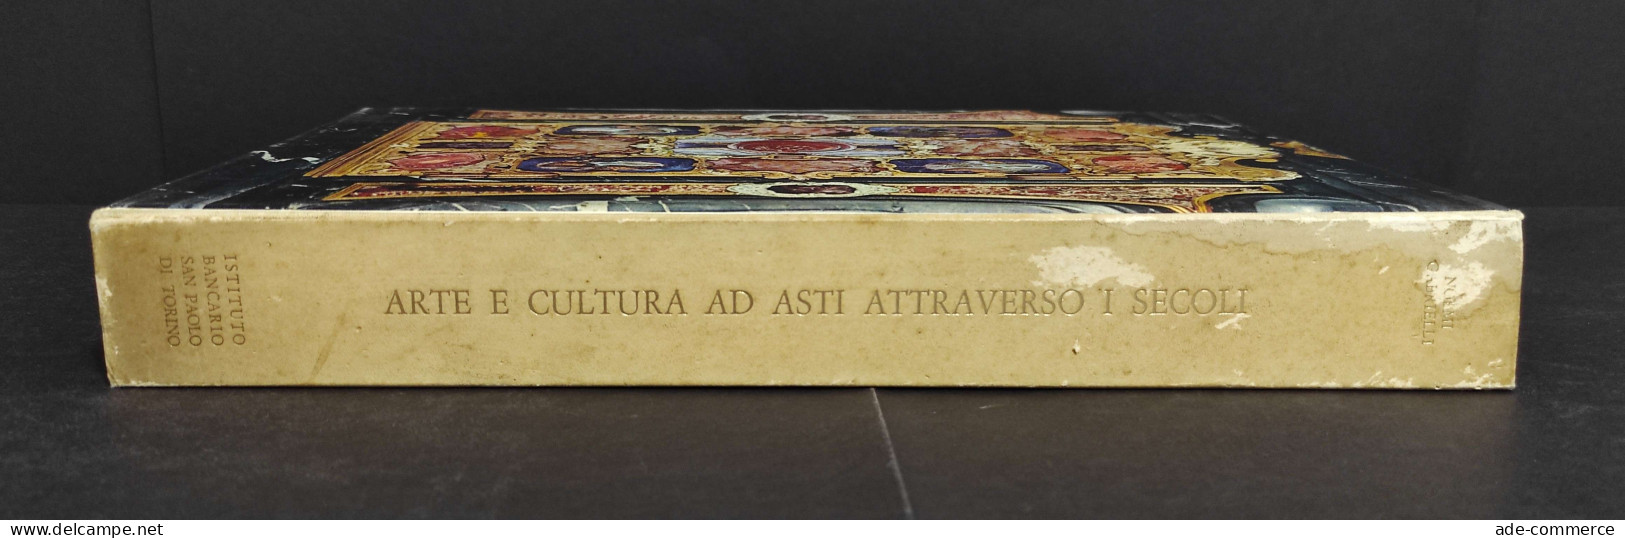 Arte Cultura Ad Asti Attraverso I Secoli - N. Gabrielli - 1977 - Kunst, Antiek